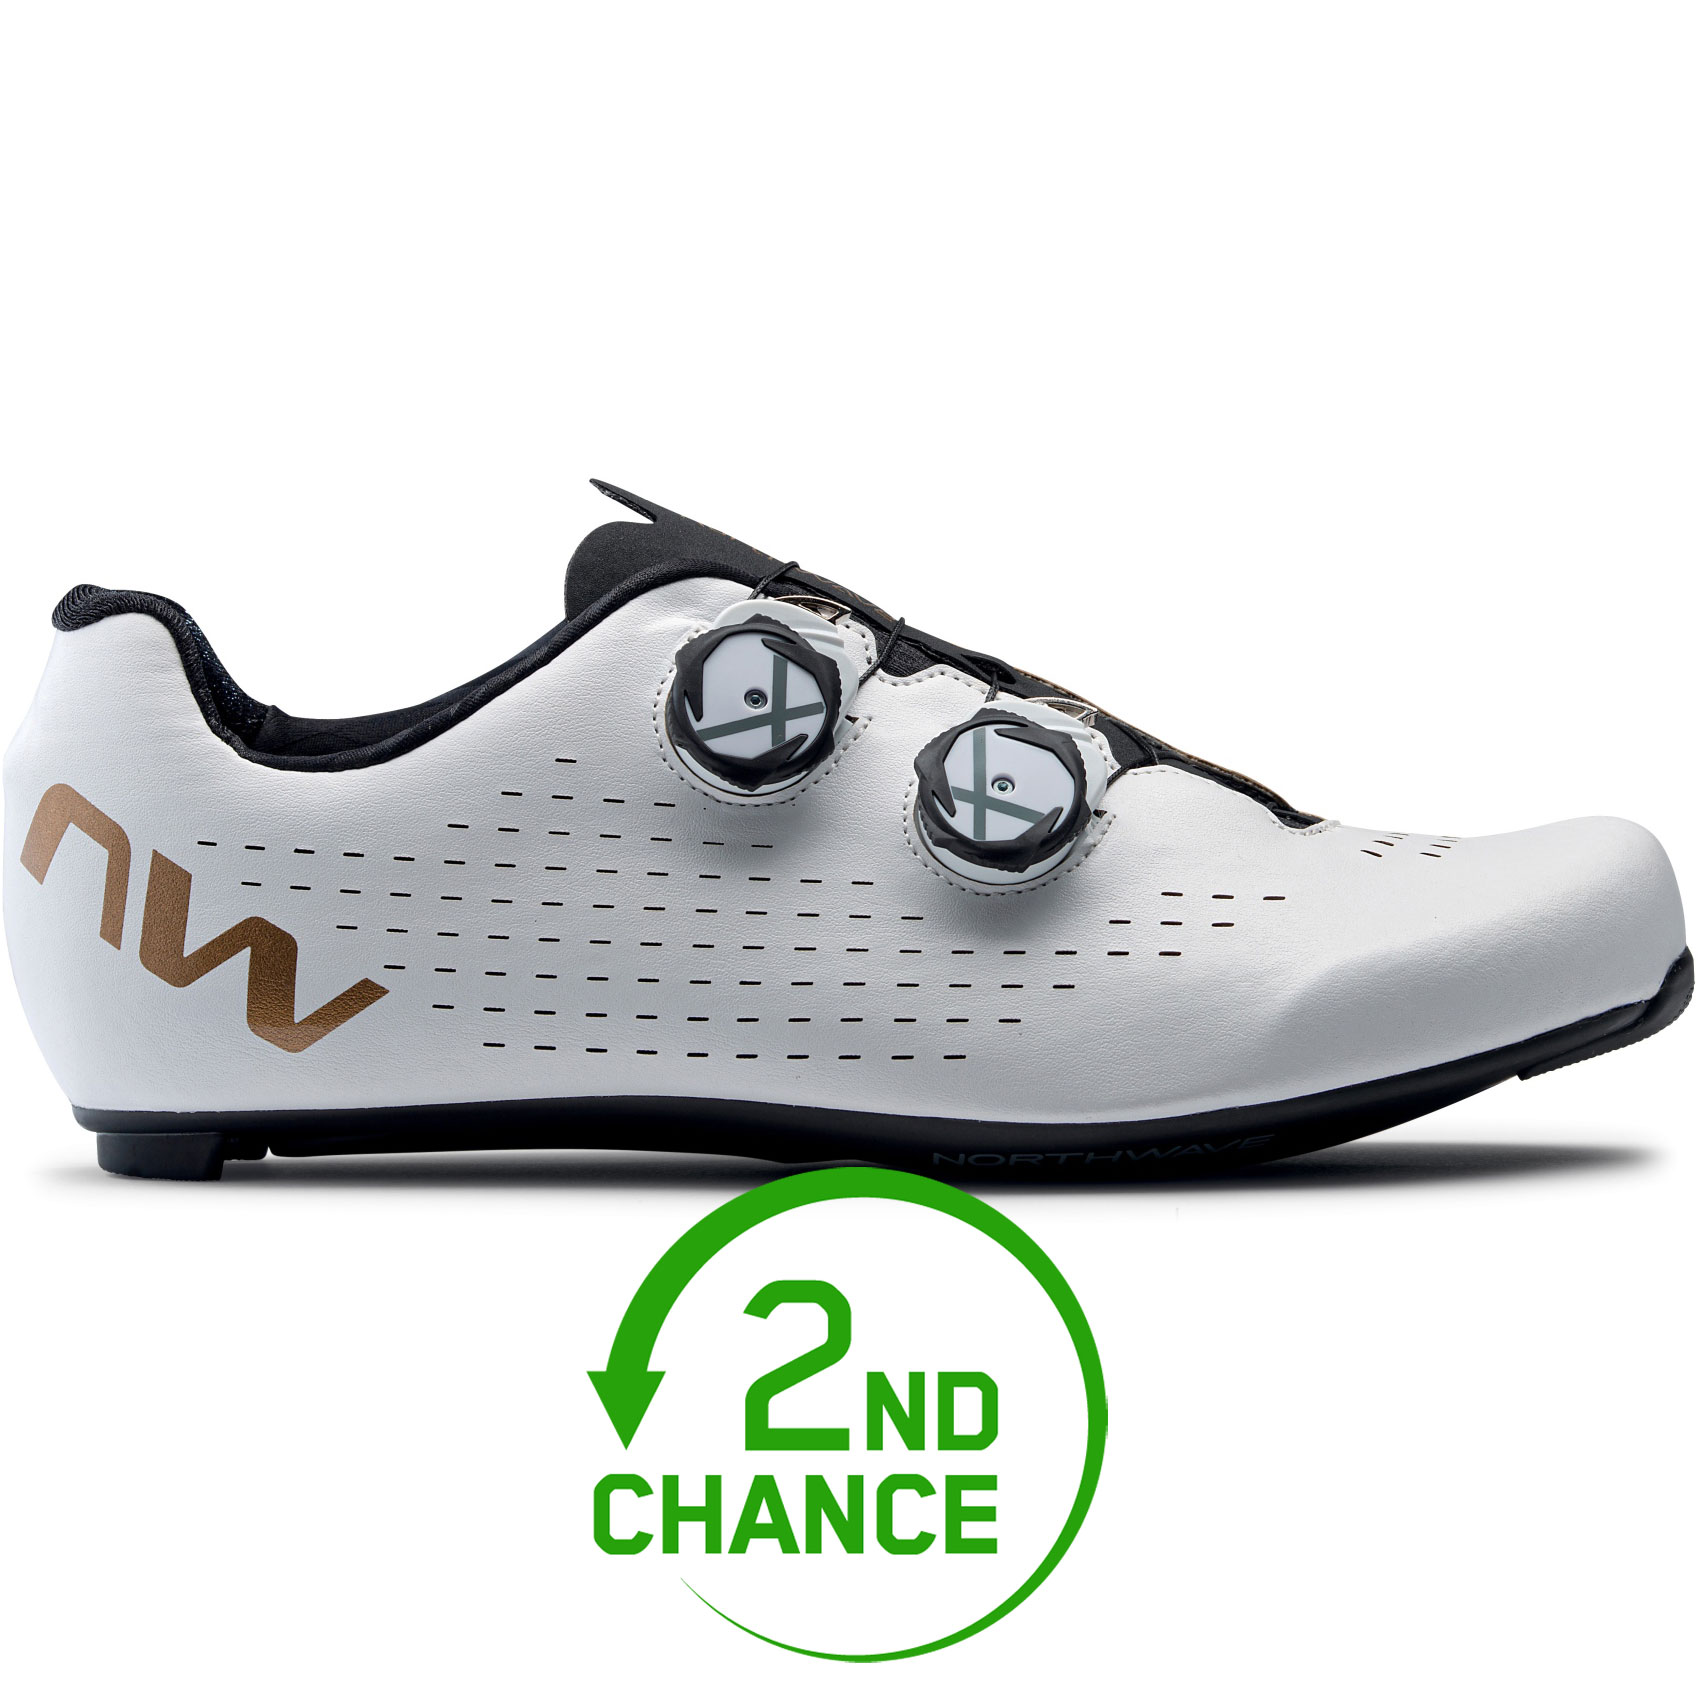 Produktbild von Northwave Revolution 3 Rennradschuhe Herren - weiß/bronze 55 - B-Ware